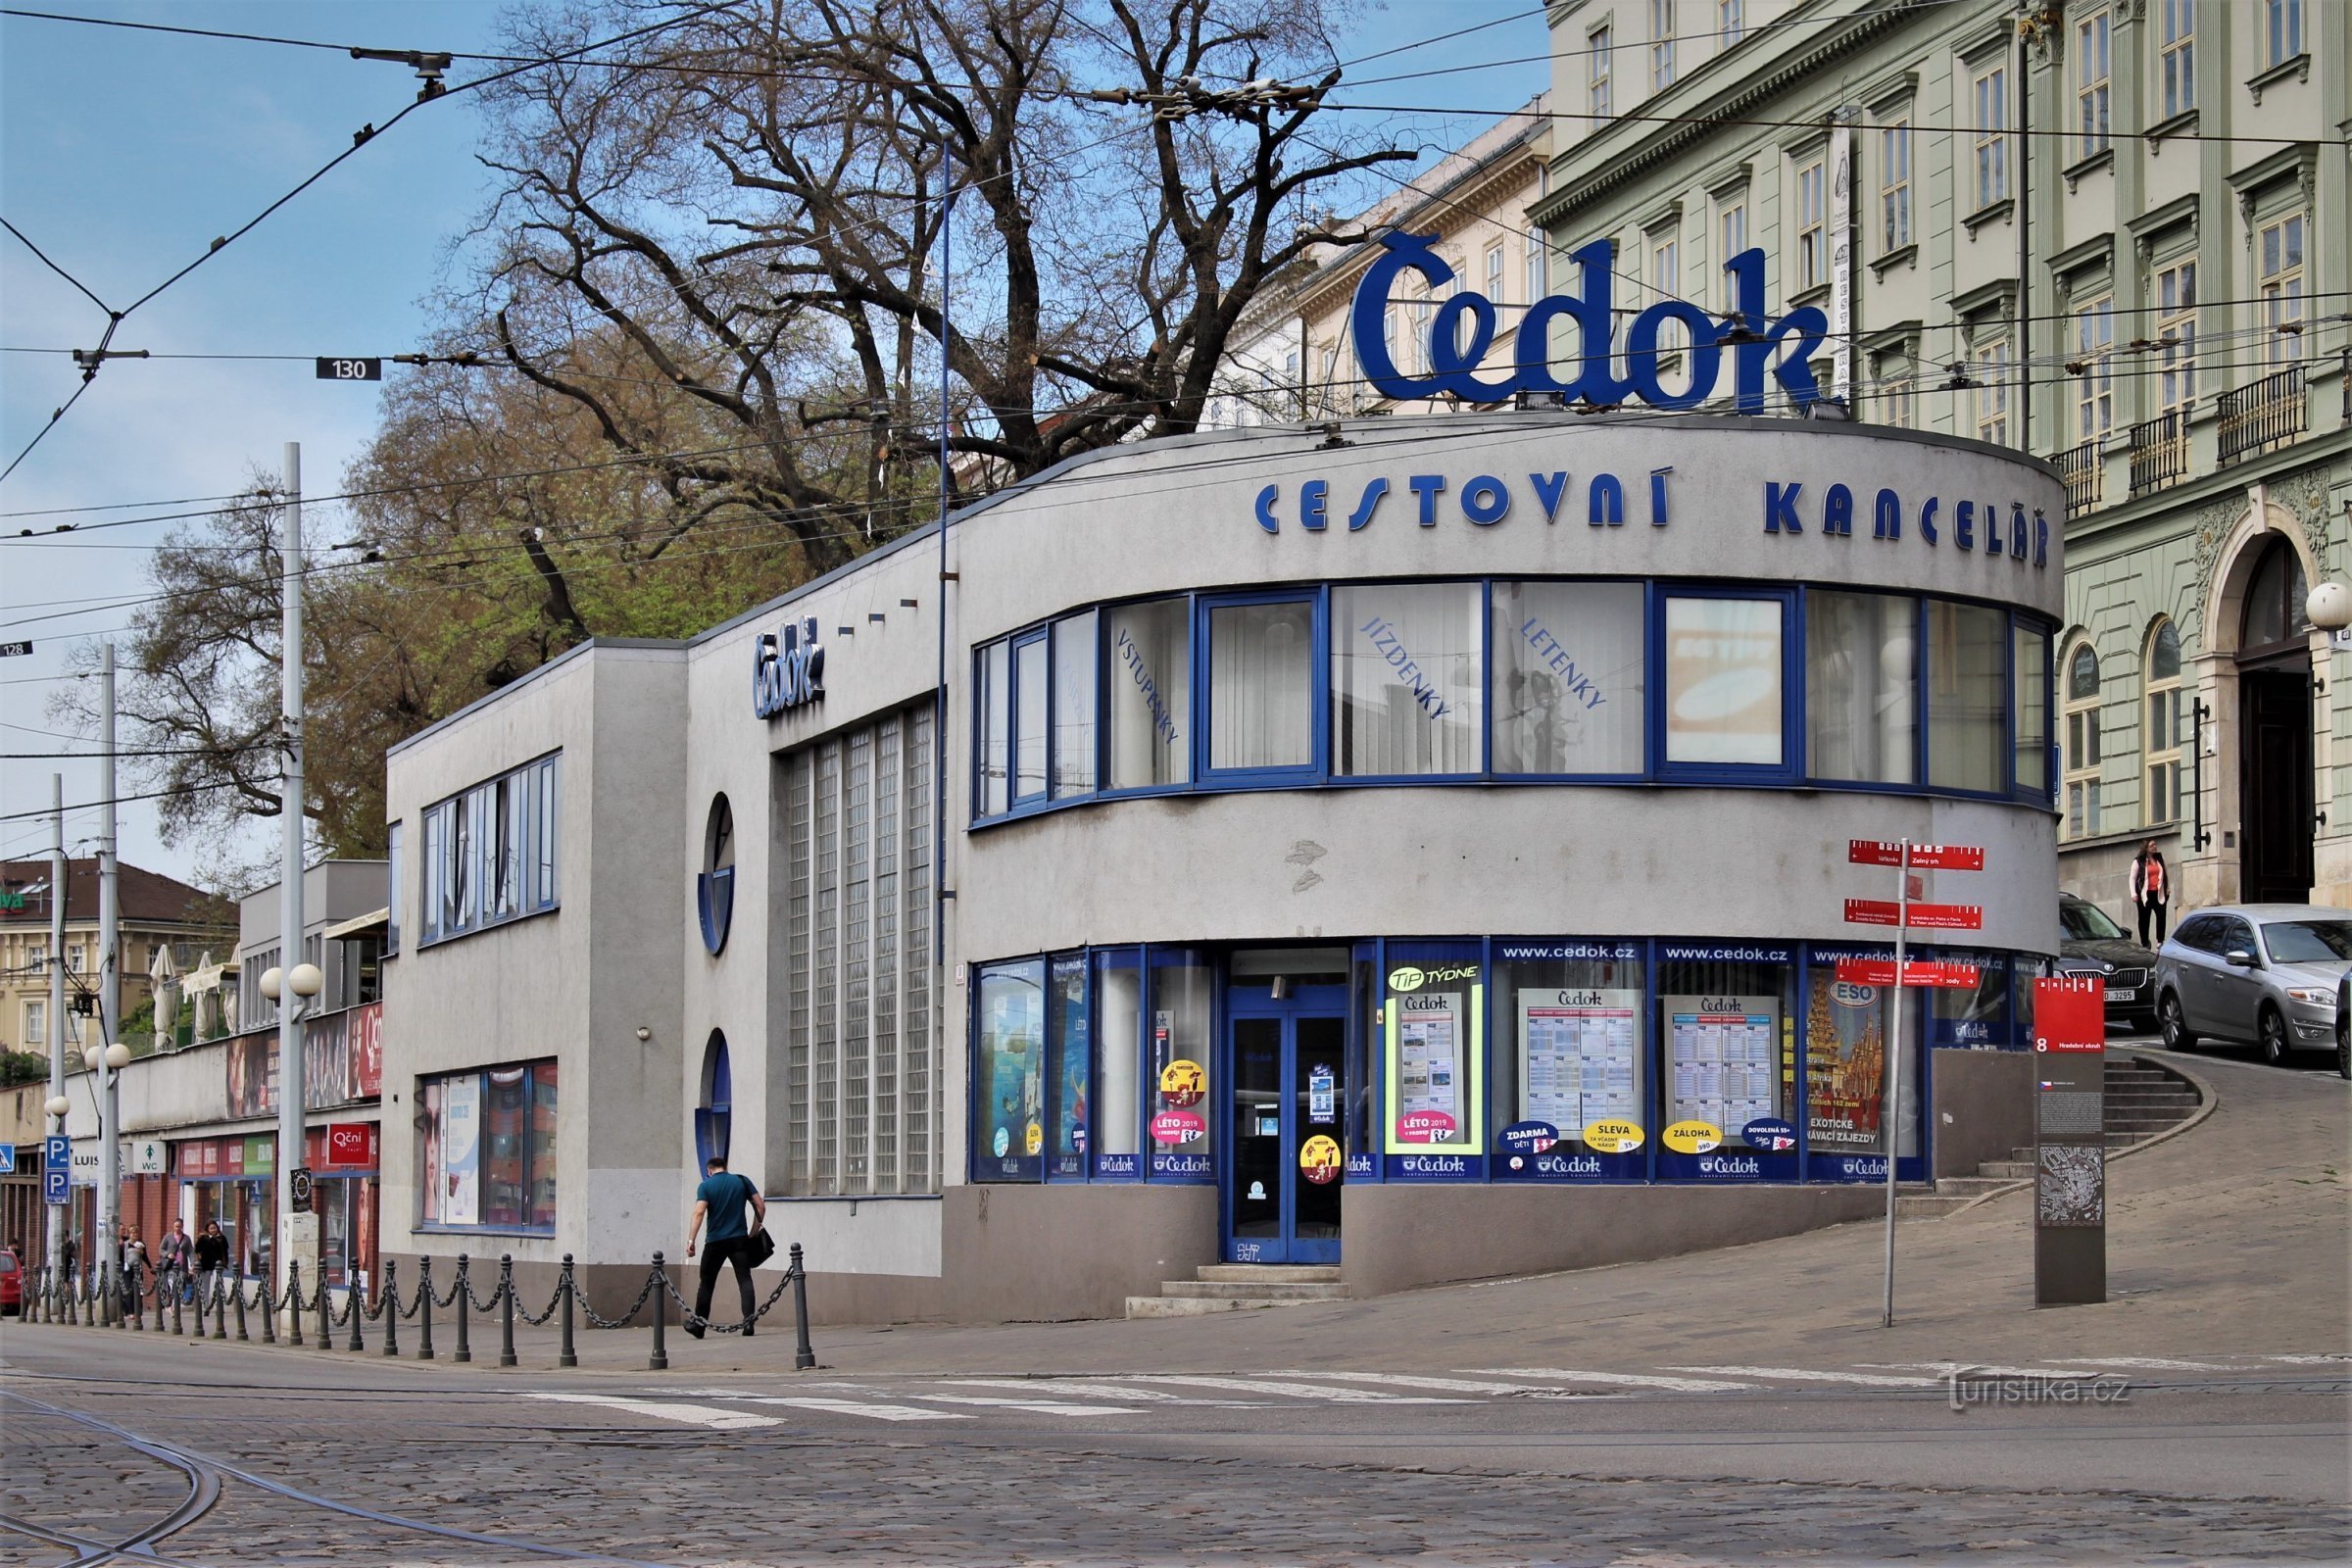 Brno - Čedok épület